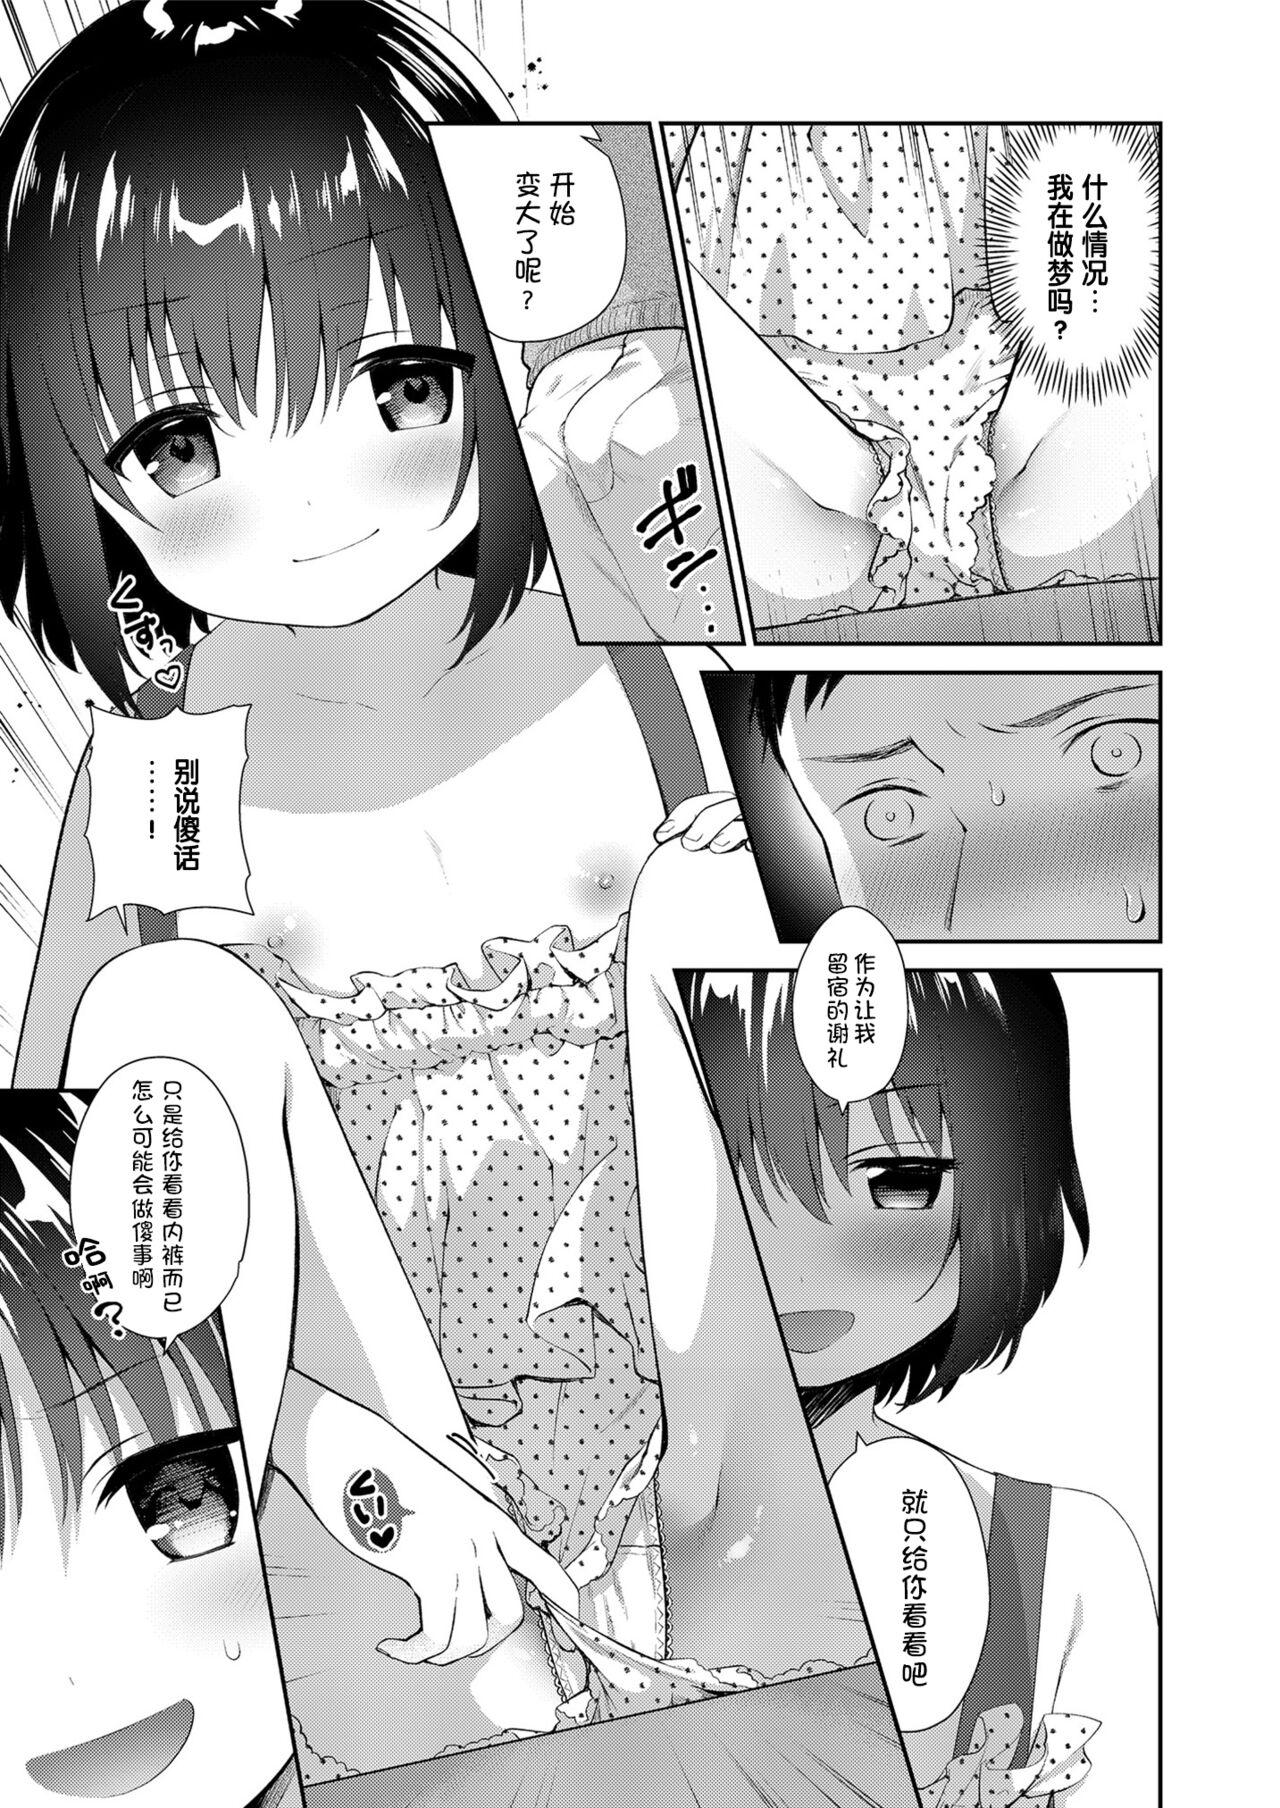 Transexual Mei ga Warui kara Shikatanai. - Original Butt - Page 5